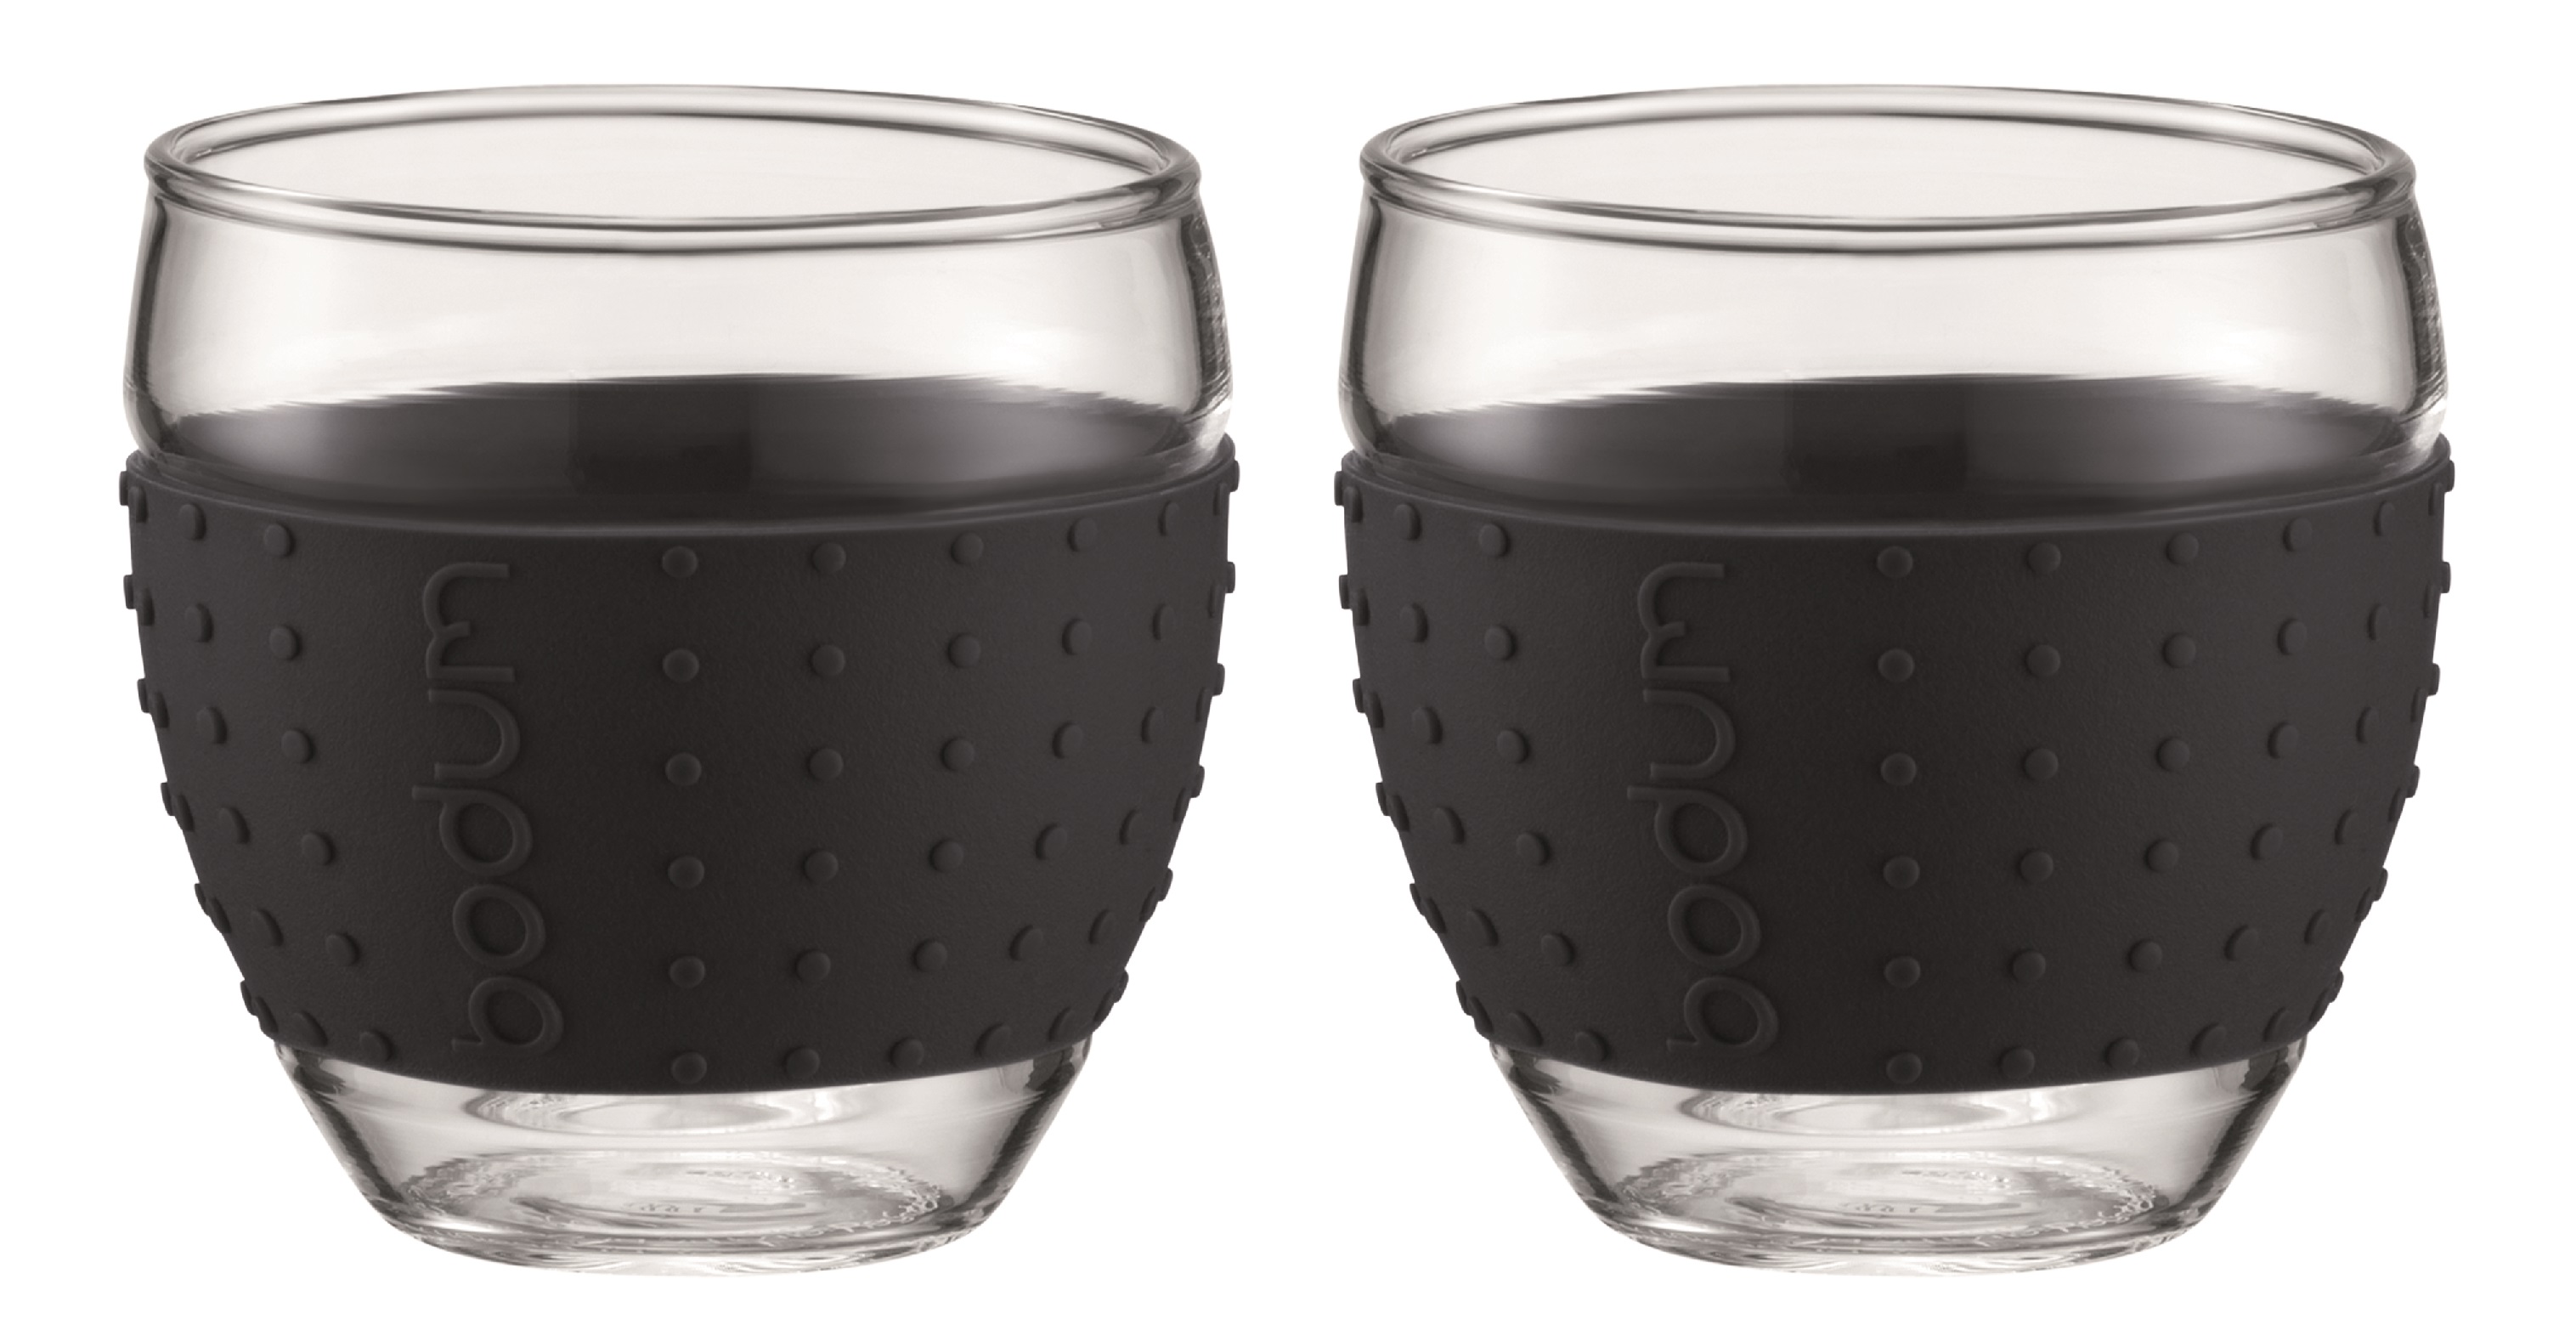 Afhaalmaaltijd Vervreemding Verschrikkelijk Bodum Glasses Pavina with Silicone Sleeve Black 35 cl - Set of 2 | Buy now  at Cookinglife